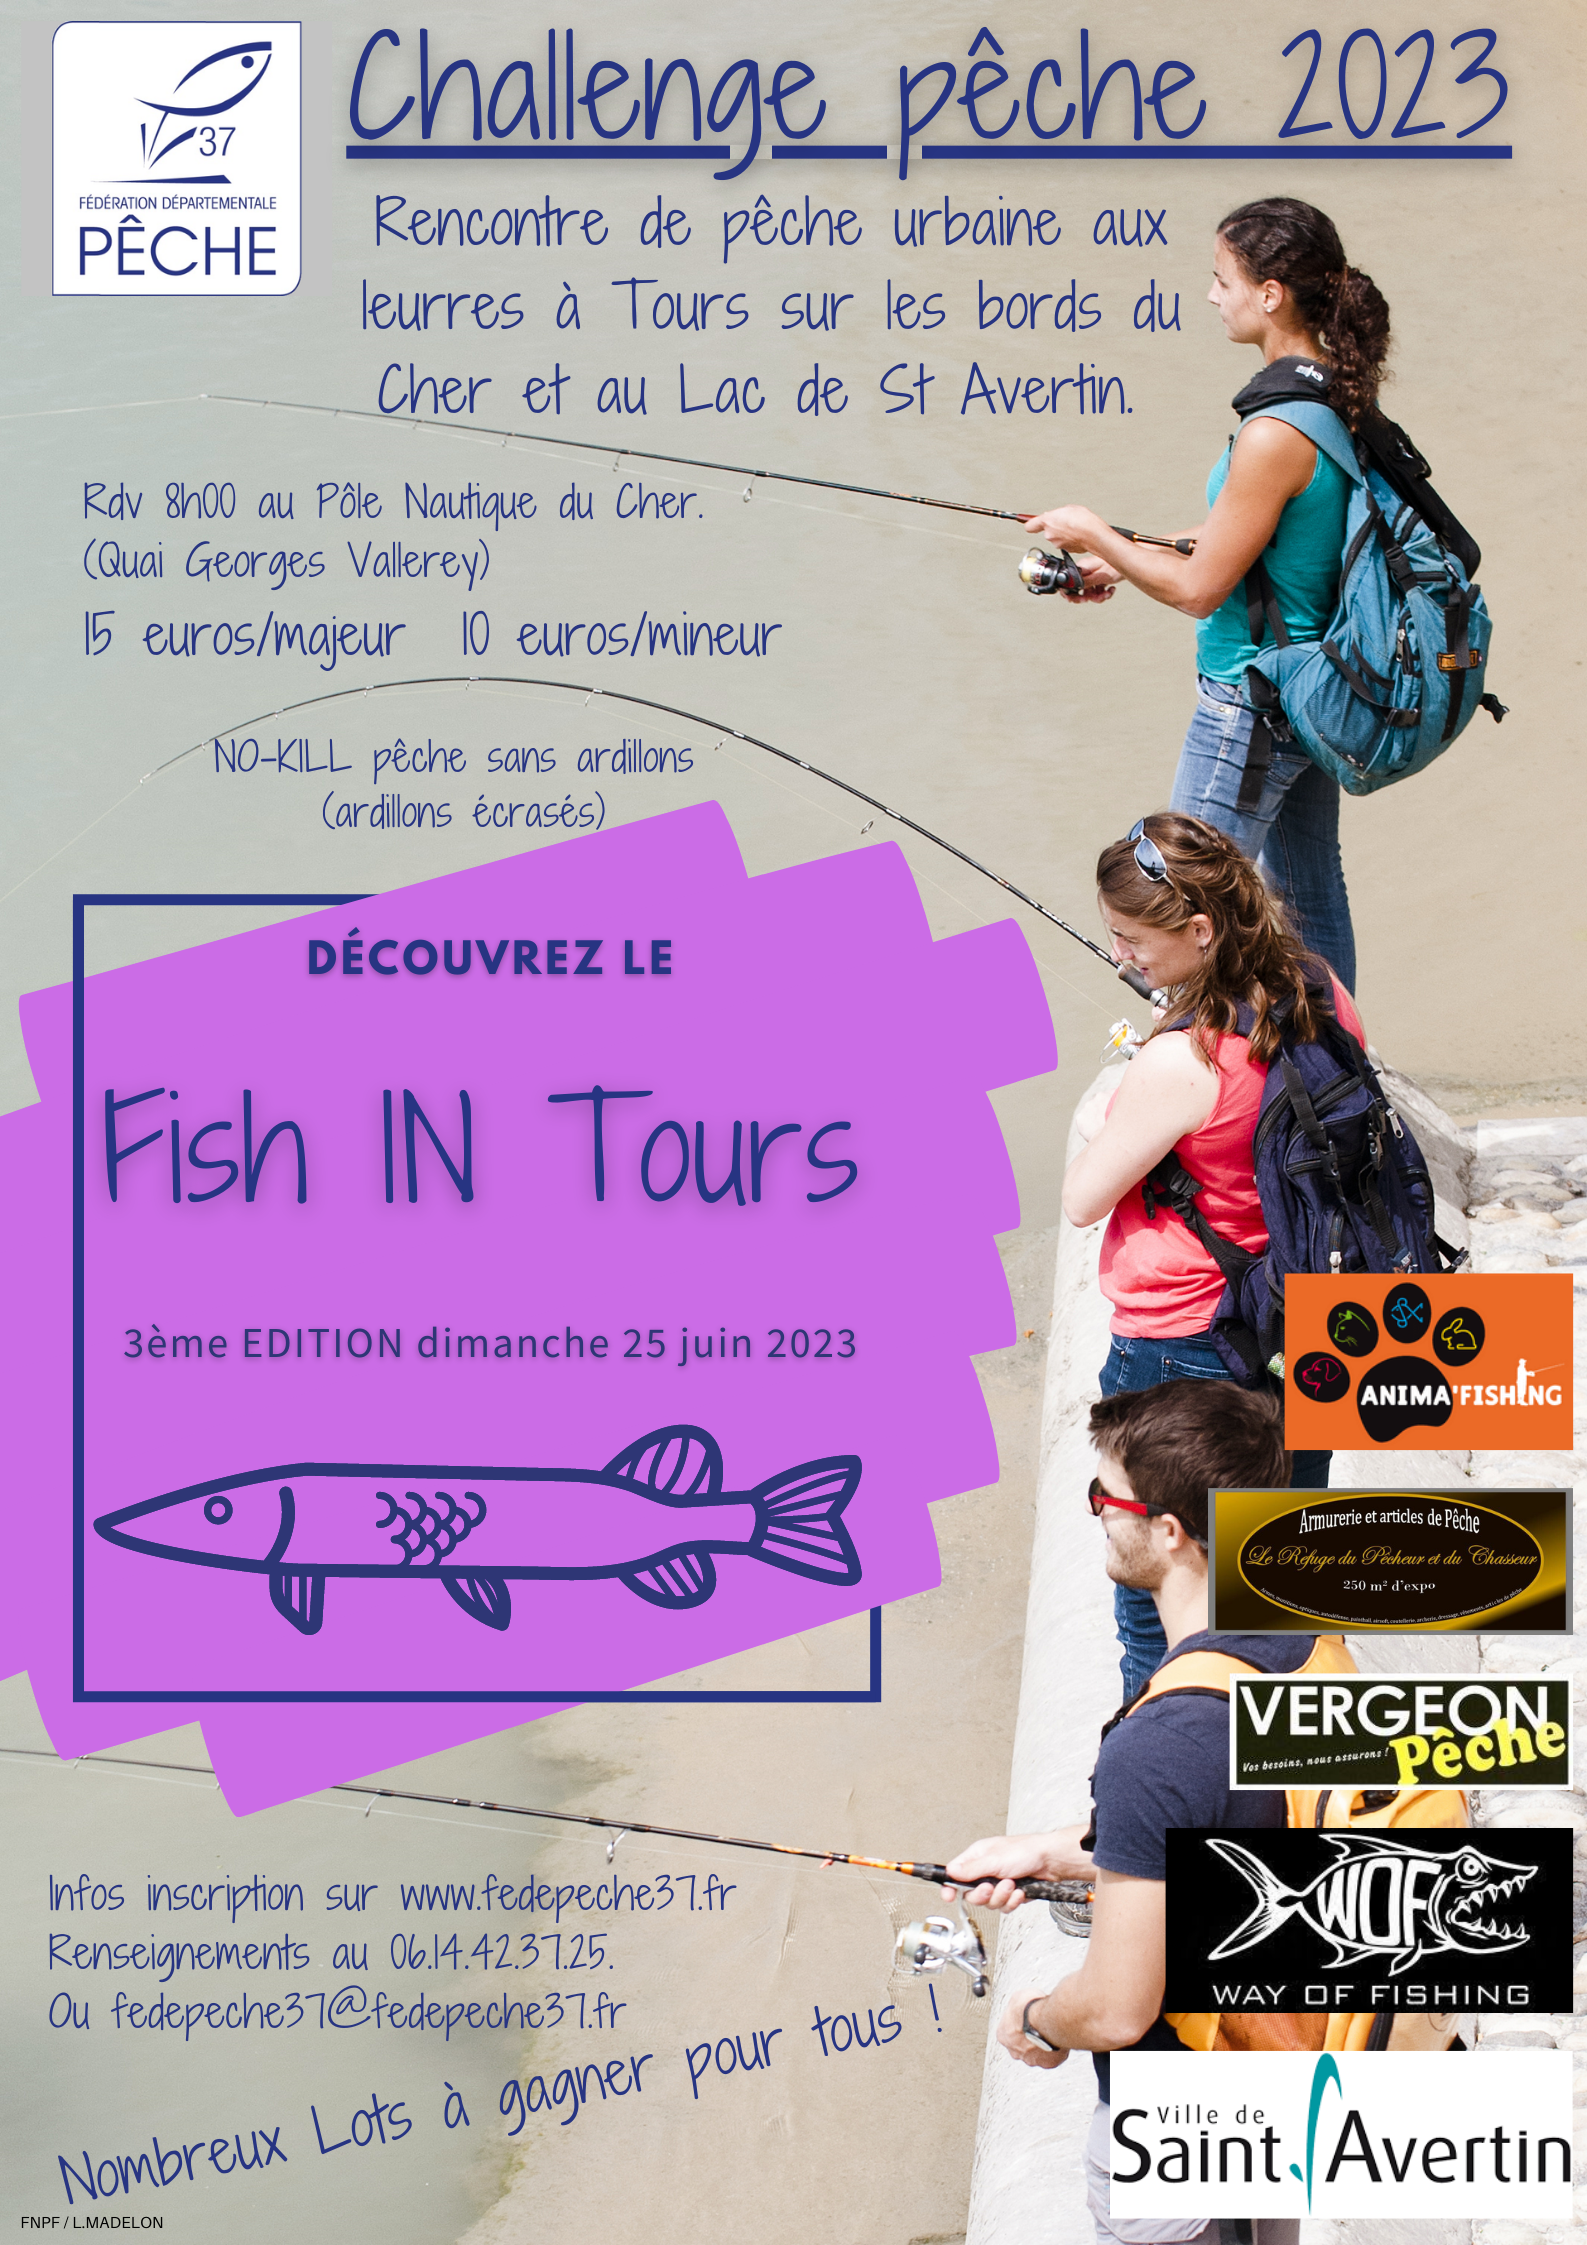 Fish IN Tours et Challenge float-tube 2023 - Fédération de Pêche  d'Indre-et-Loire 37